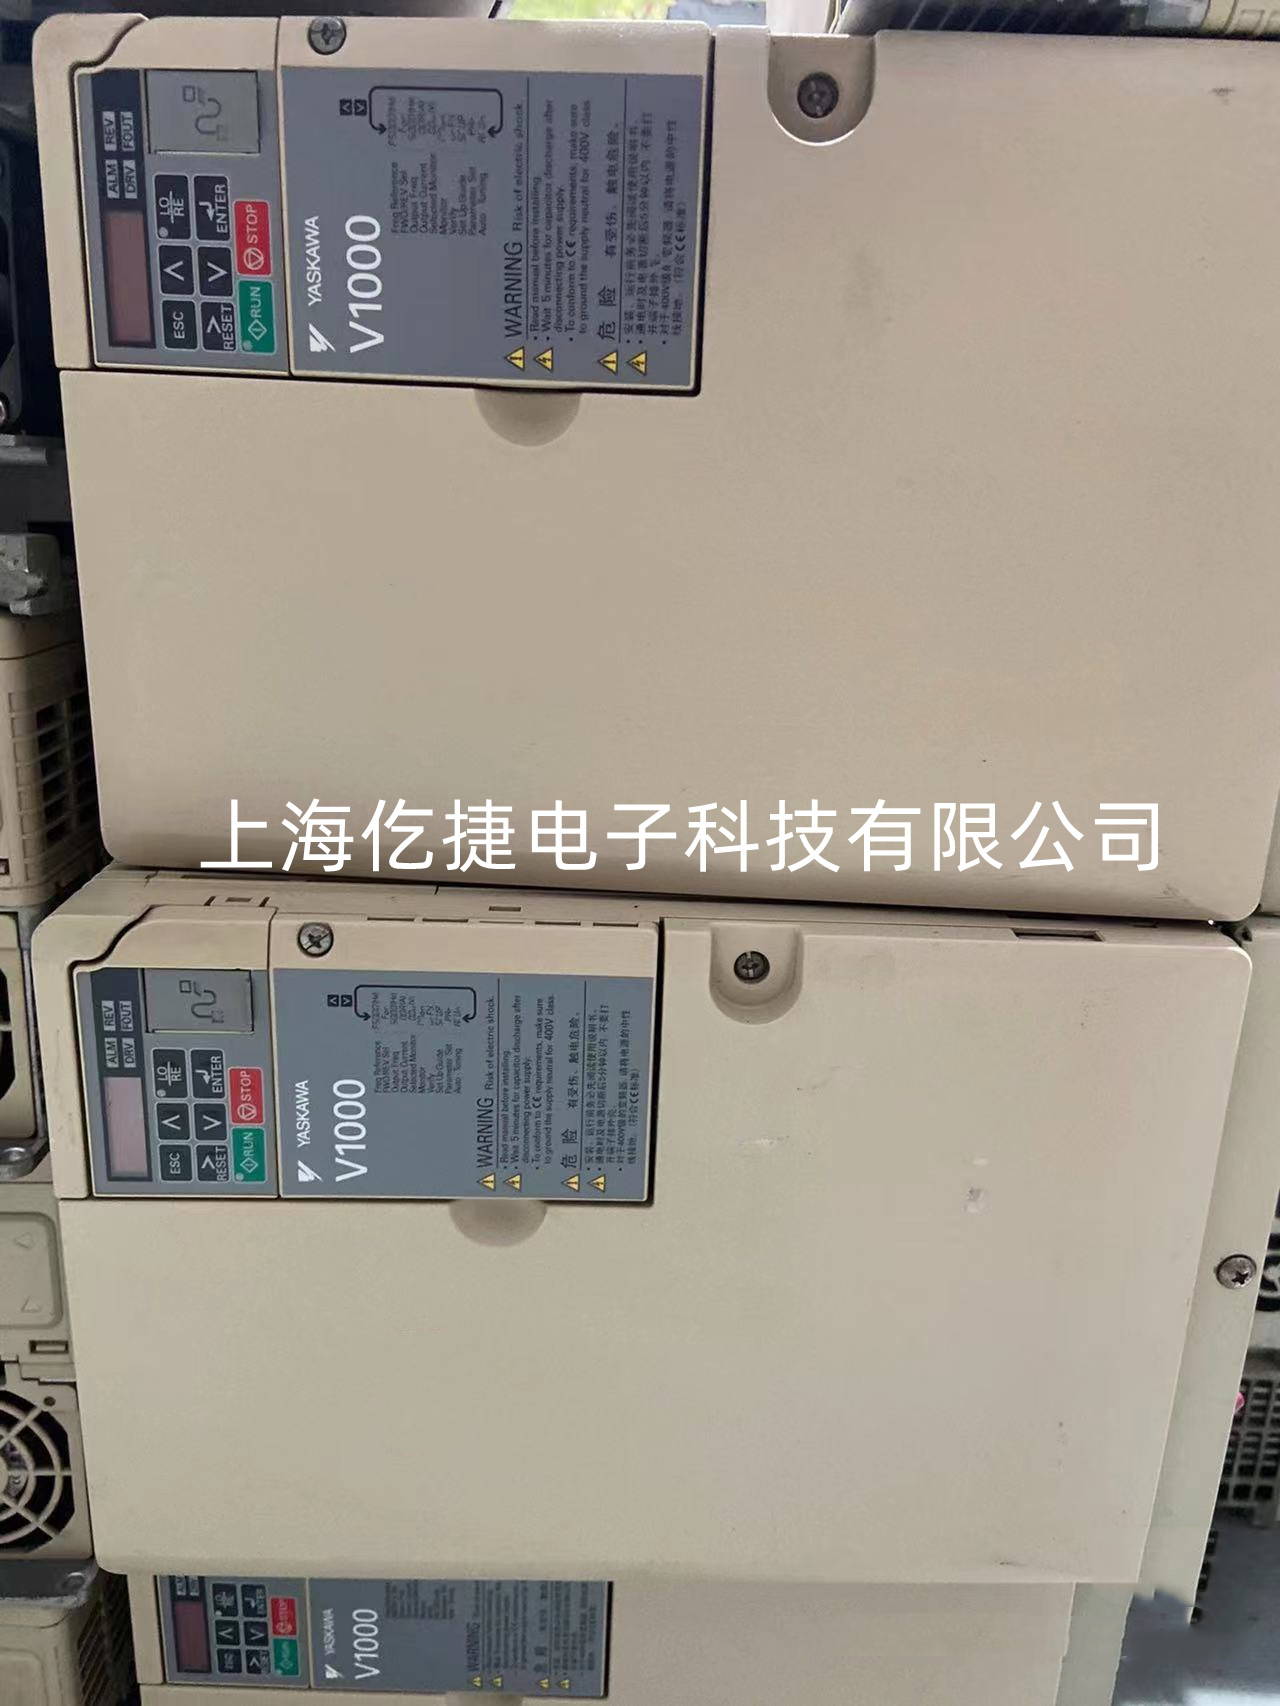 广东AB罗克韦尔变频器4M系列故障维修报警F005